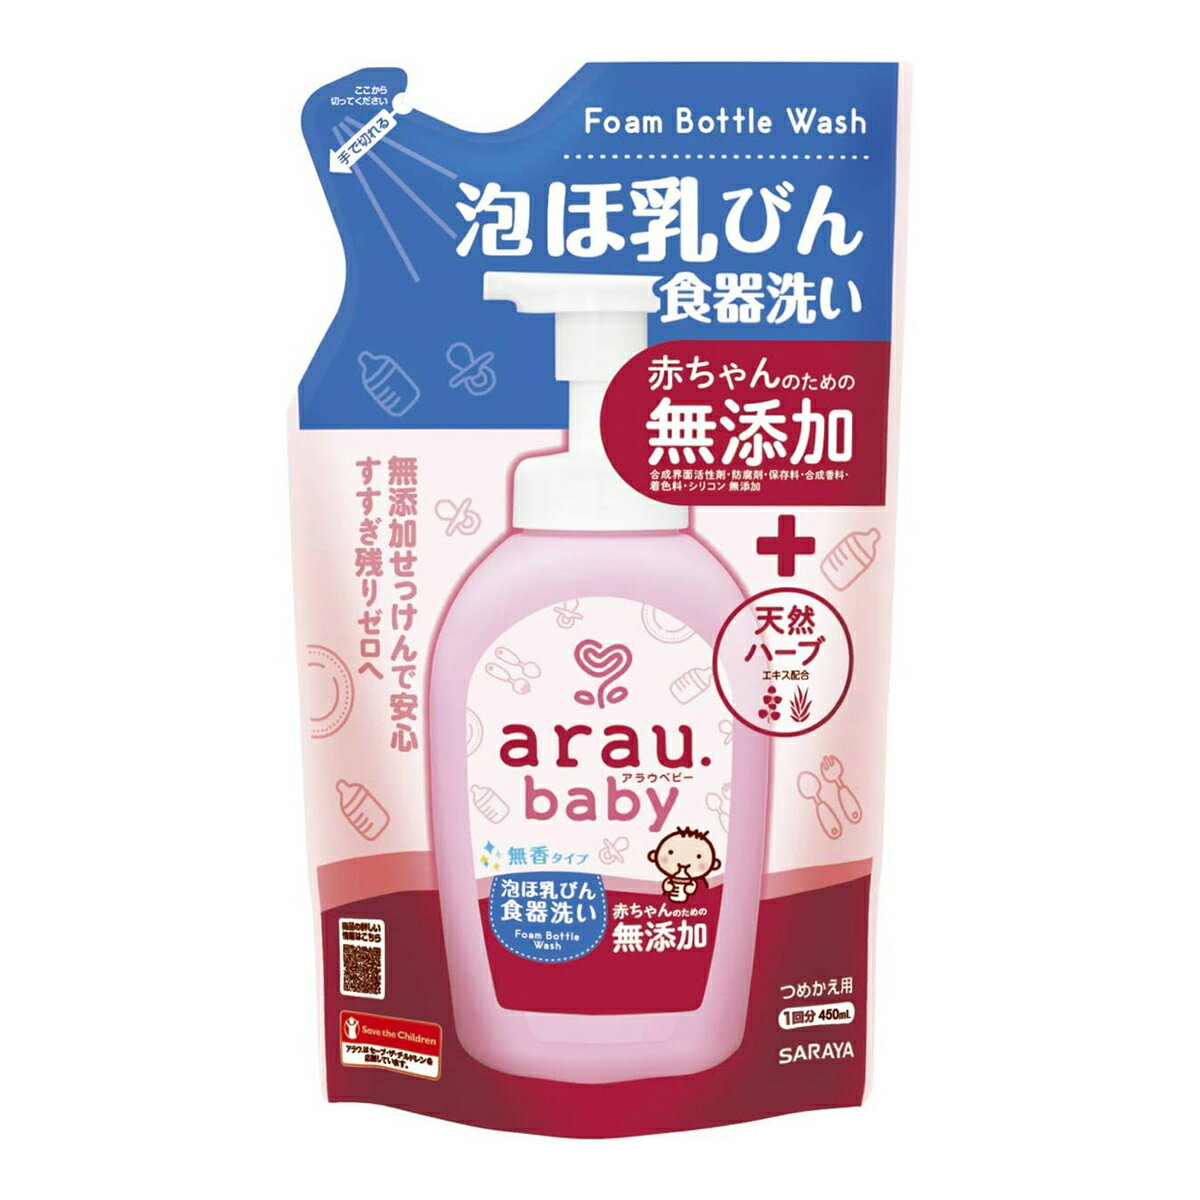 商品名：アラウ．ベビー　泡 ほ乳ビン食器洗い 詰替　450mL内容量：450mlブランド：arau．ベビー原産国：日本無添加せっっけんに天然由来のすすぎ成分配合詰替1回分。赤ちゃんの口にするものにも安心の泡ほ乳びん食器洗い（合成界面活性剤、合成香料、着色料、保存料無添加）。無添加せっけんに天然由来のすすぎスッキリ成分（ソホロースリピッド）を配合。JANコード：4973512258206商品番号：101-17880区分： ベビー 広告文責：アットライフ株式会社TEL 050-3196-1510※商品パッケージは変更の場合あり。メーカー欠品または完売の際、キャンセルをお願いすることがあります。ご了承ください。